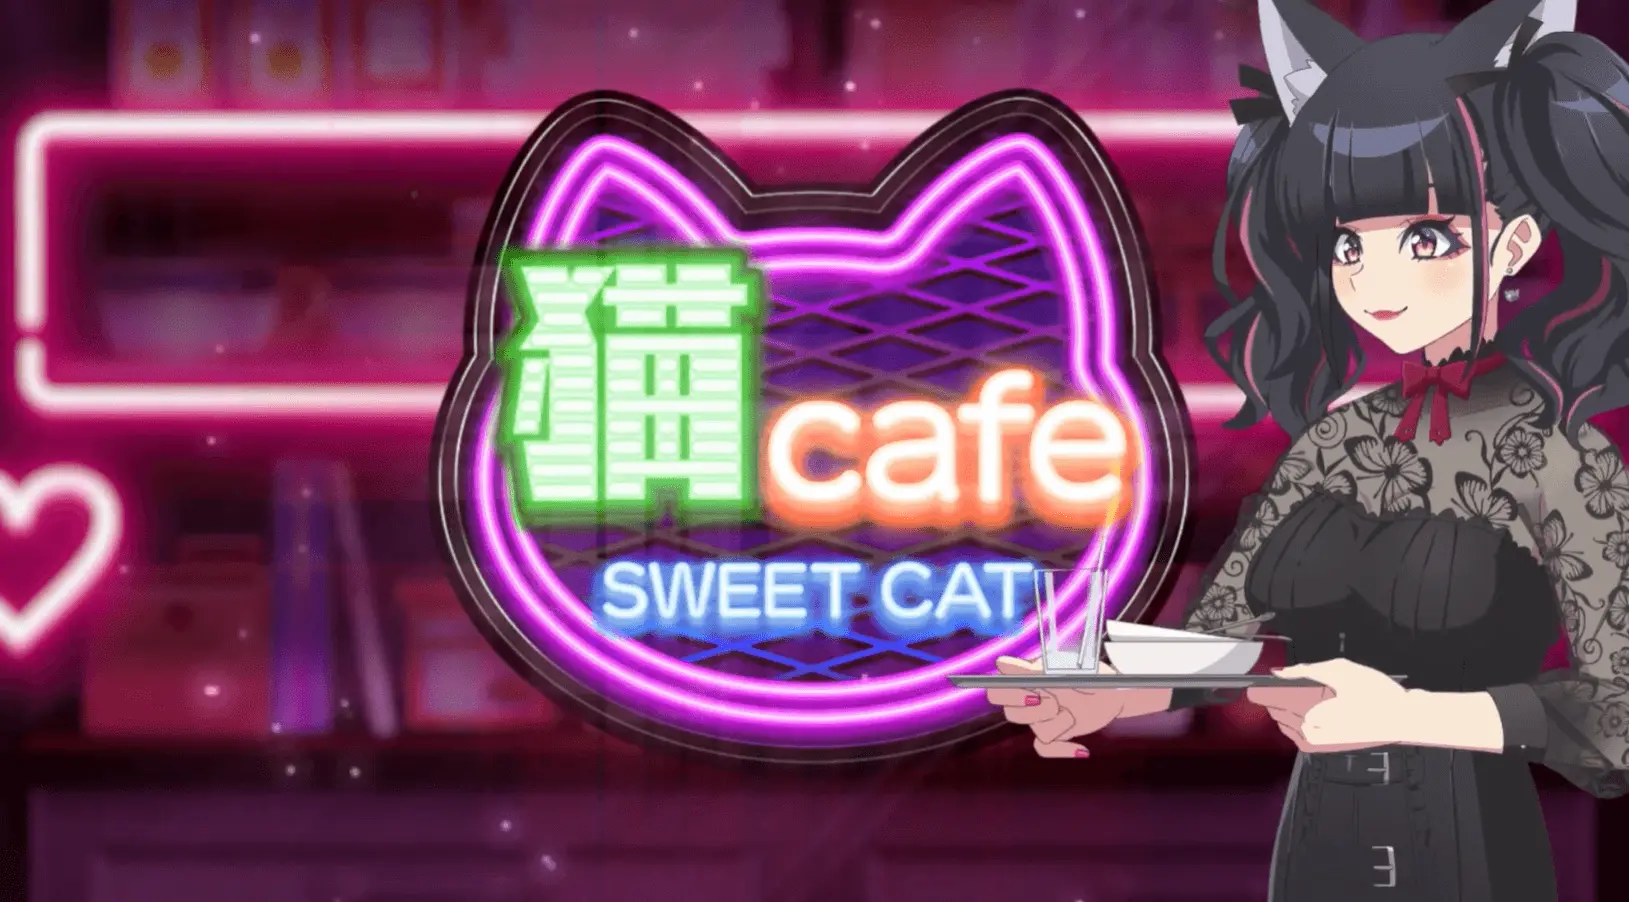 スイートキャットカフェ (Sweet Cat Cafe)